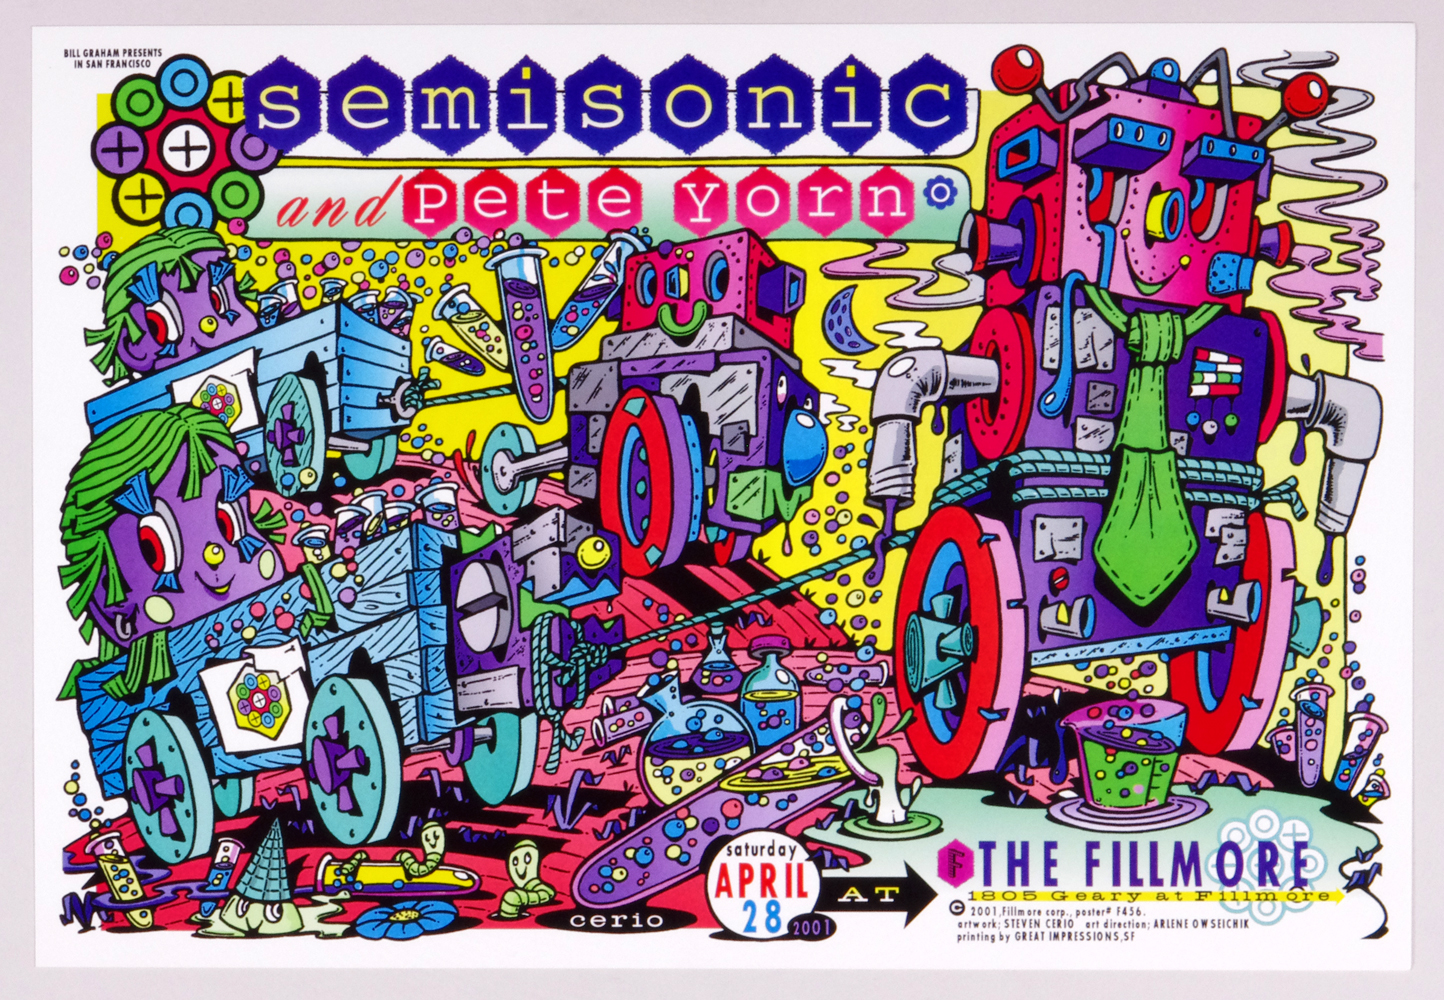 Semisonic Poster w/ Pete Yorn 2001 Apr 28 New Fillmore San Francisco